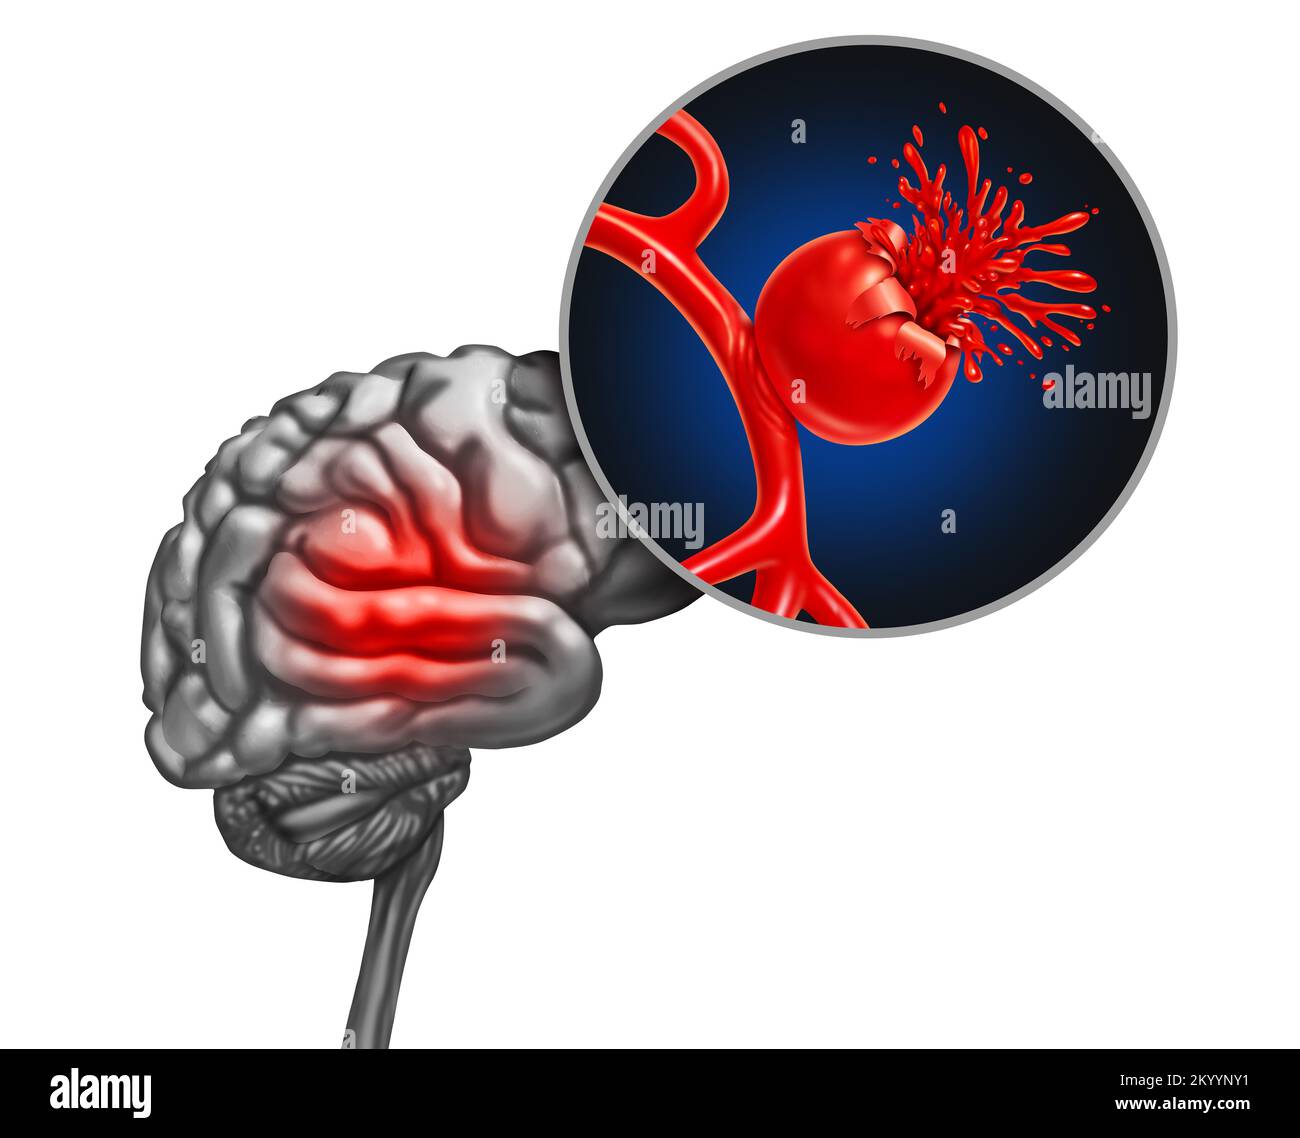 Rupture de l'anévrisme cérébral comme concept médical avec un vaisseau sanguin bombement comme artère de gonflement avec une rupture saignant le sang et causant un risque Banque D'Images